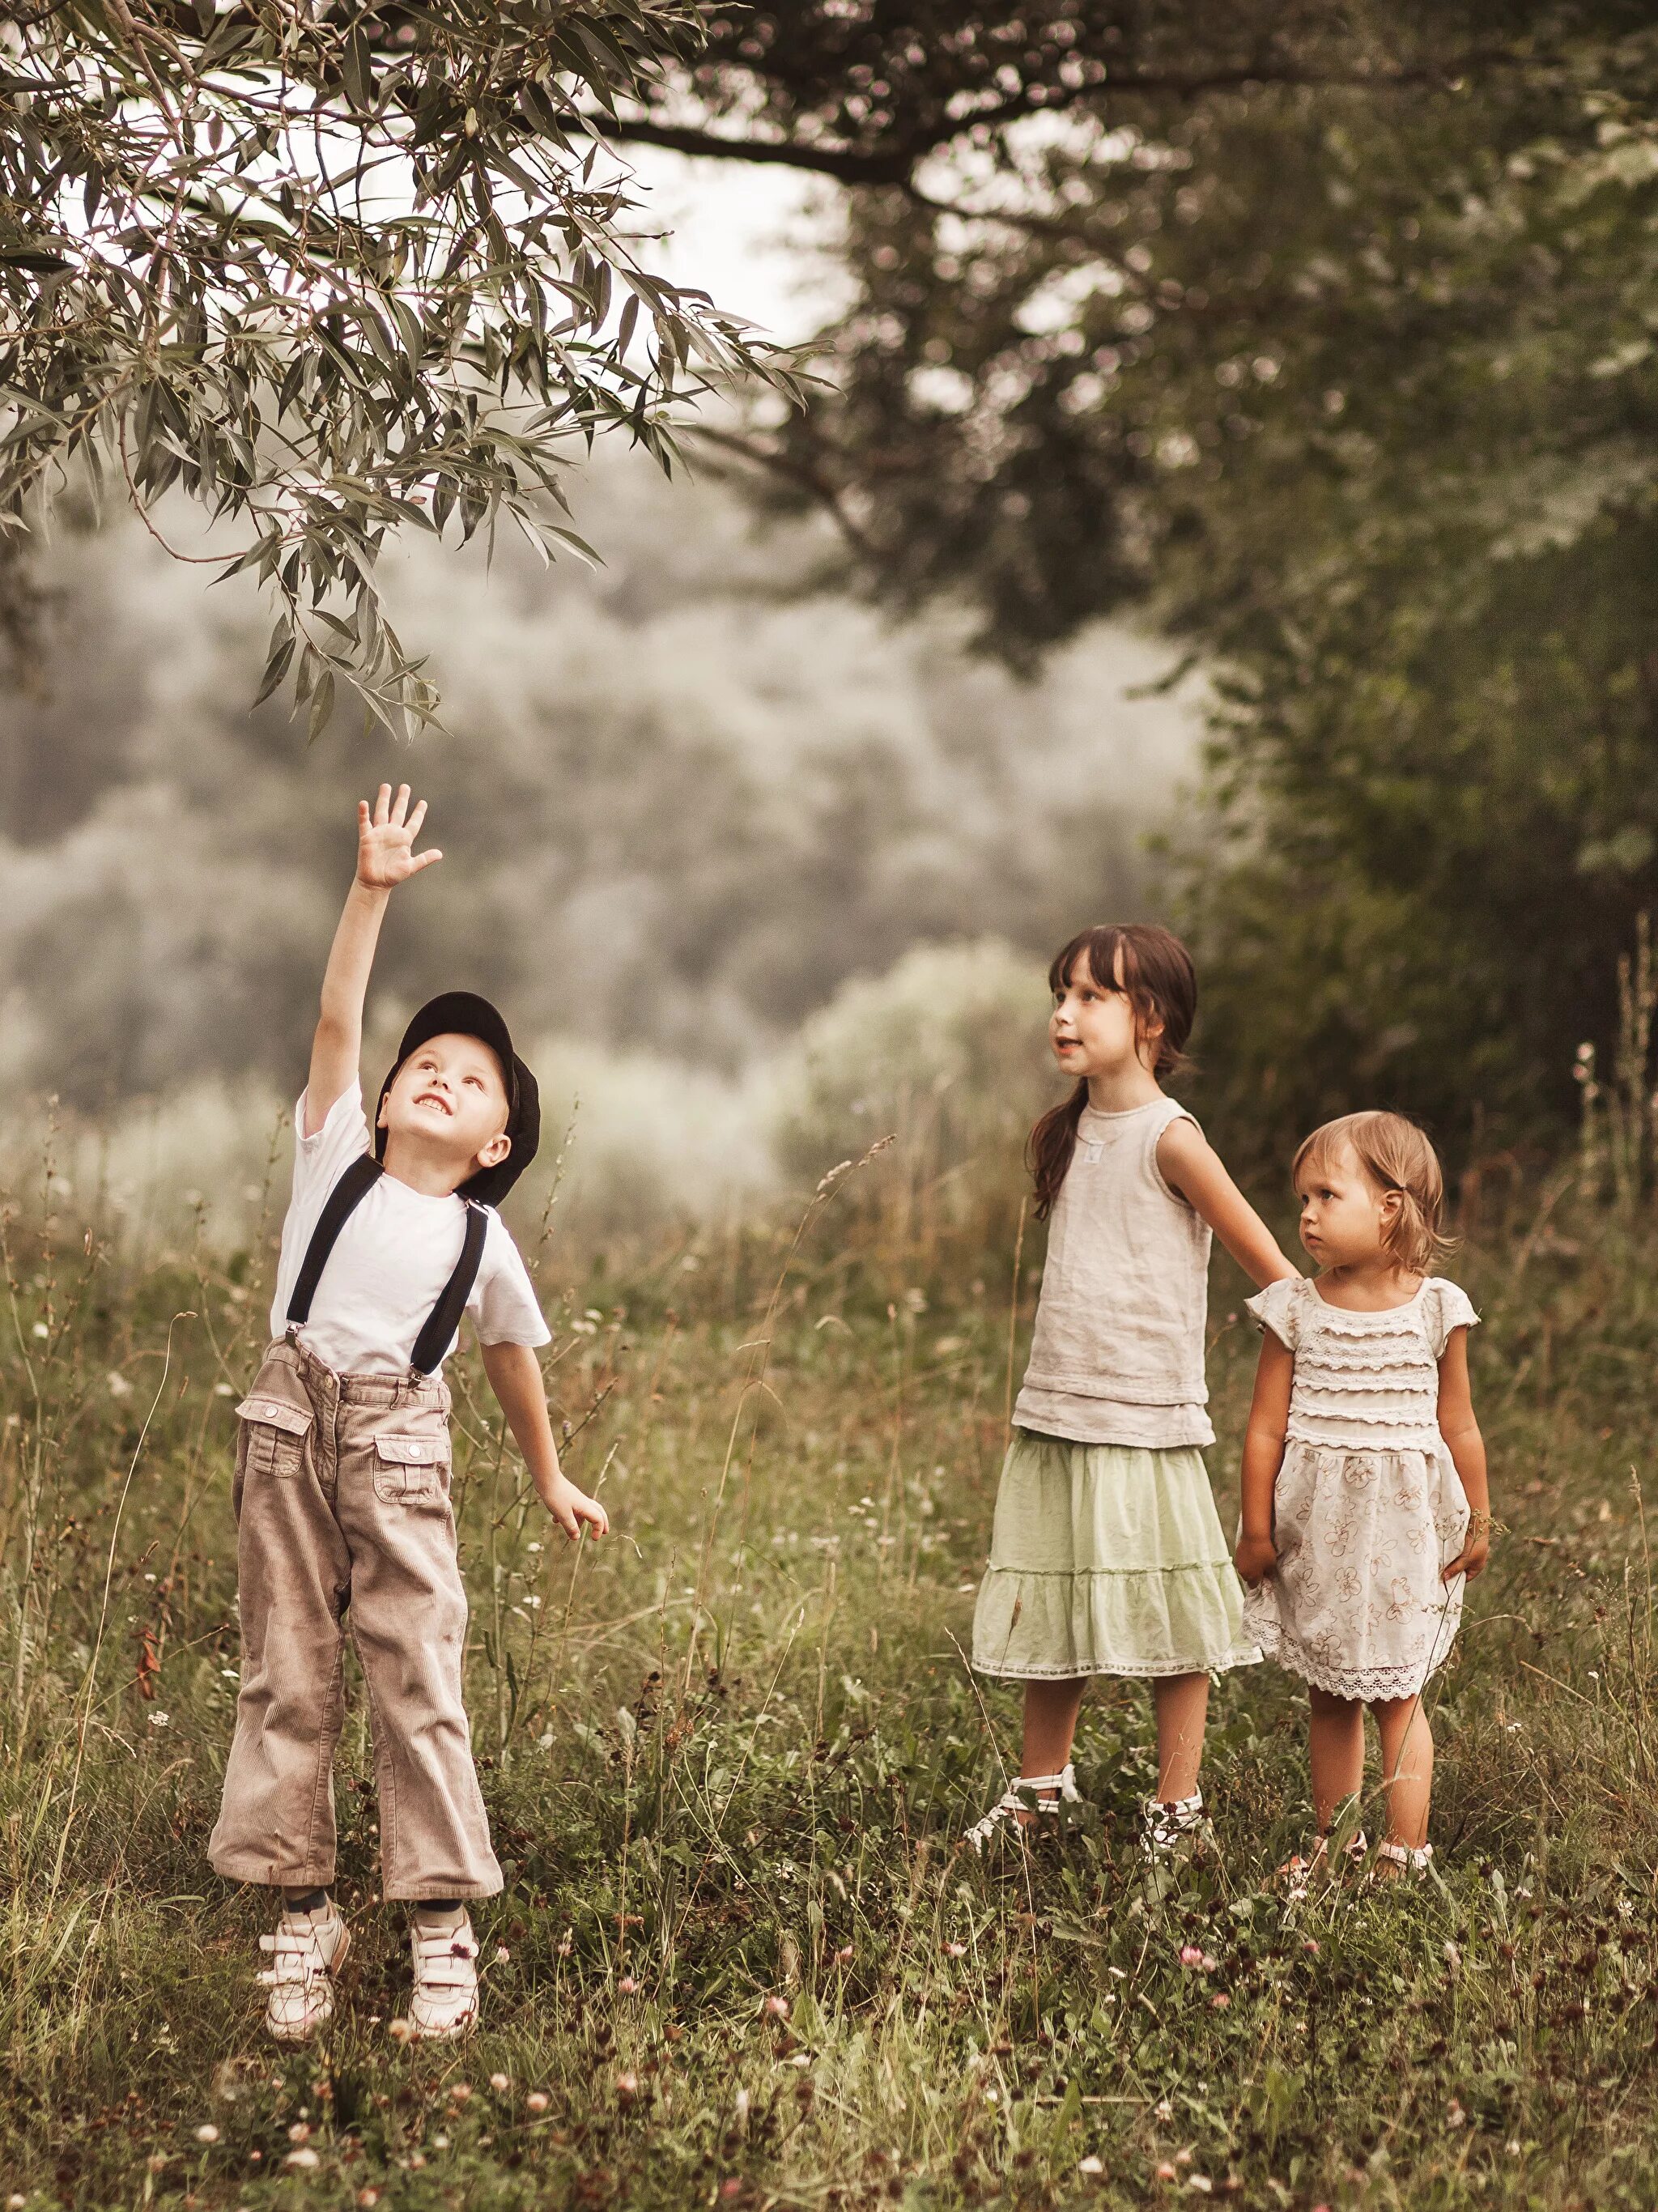 Картинка 3 мальчика. Дети и природа. При детях. Фотосессия мальчика на природе. Трое детей.